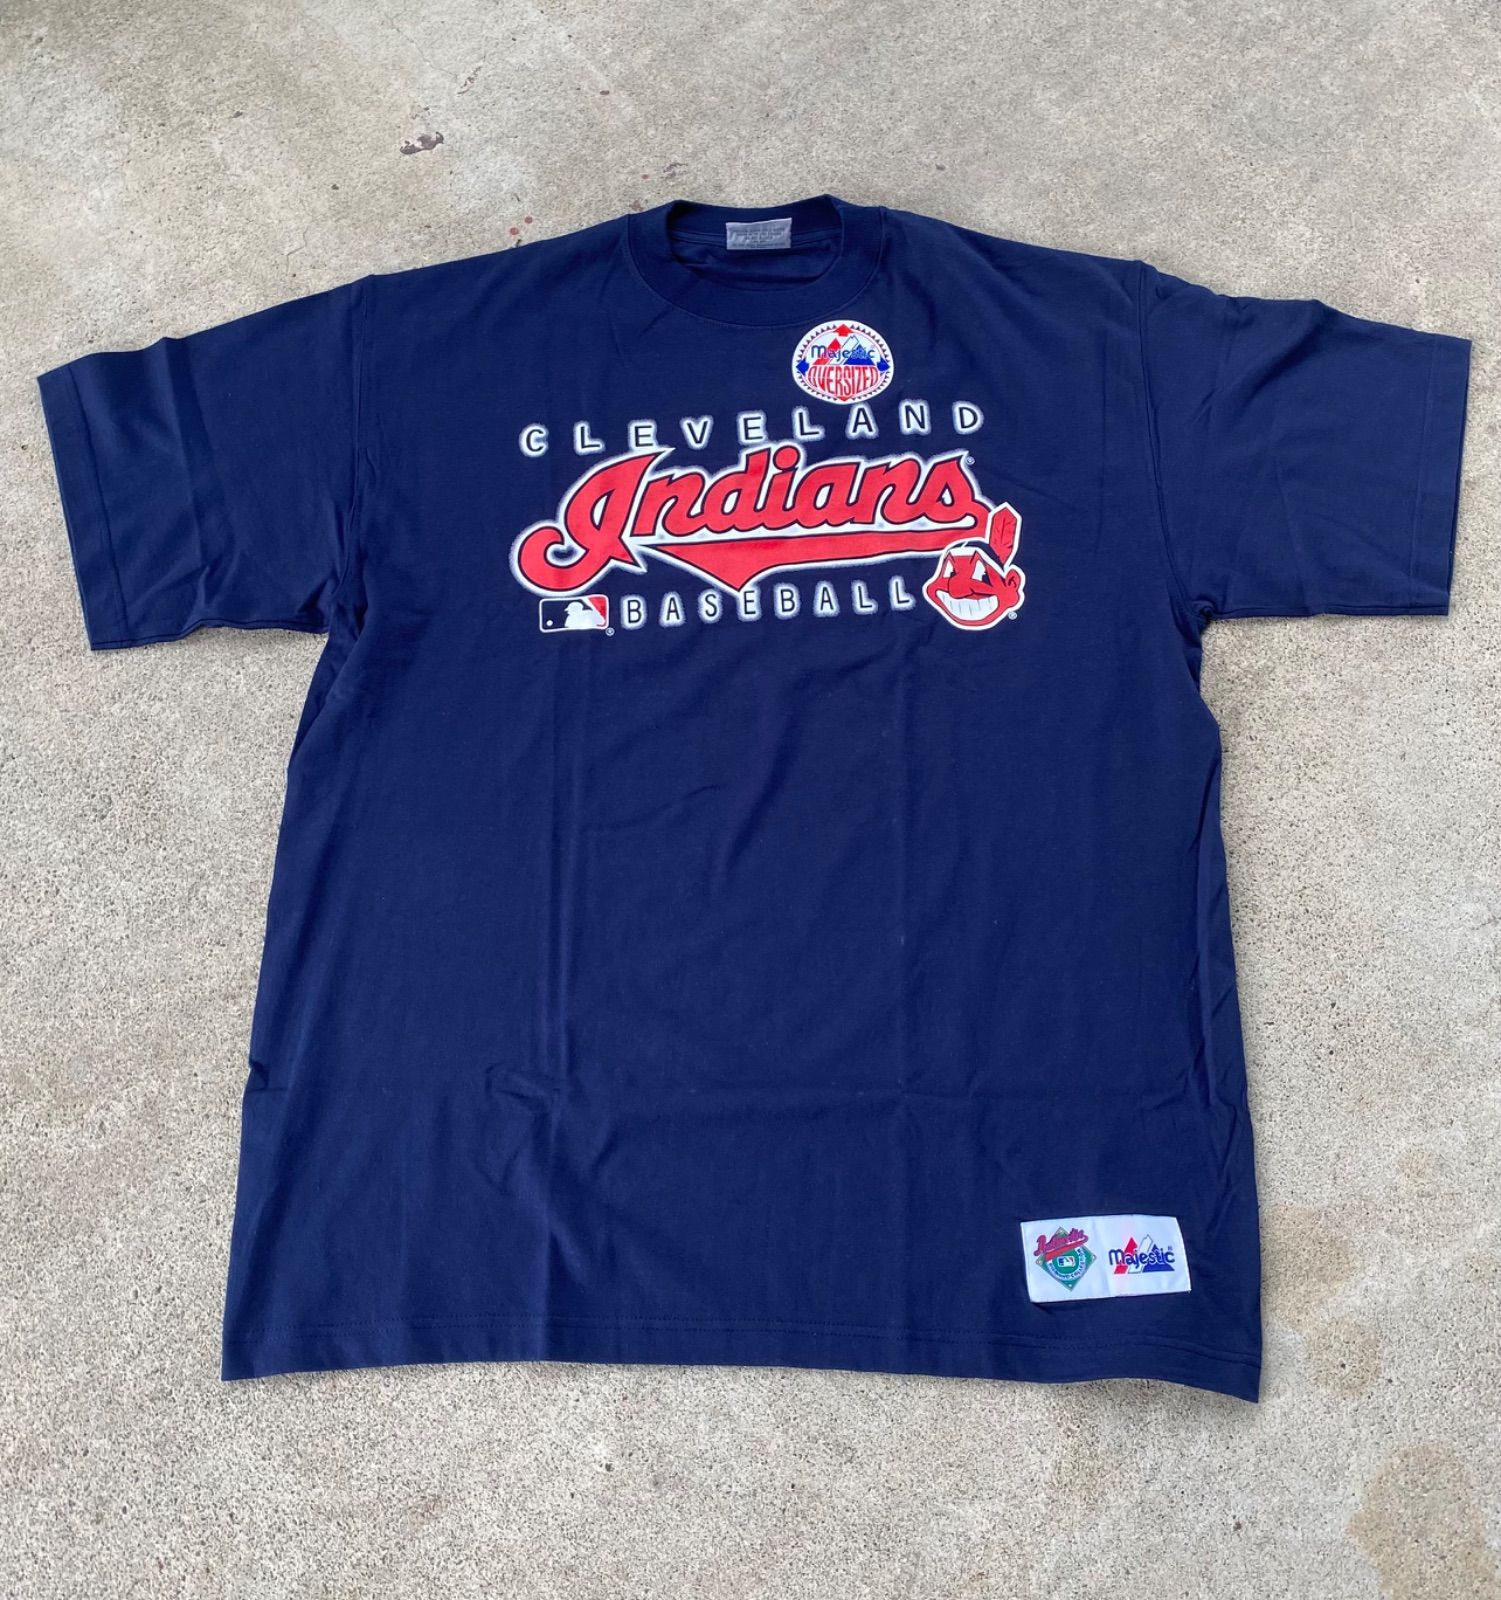 90s MLB インディアンズ × LOONEY TUNES プリント Tシャツ-